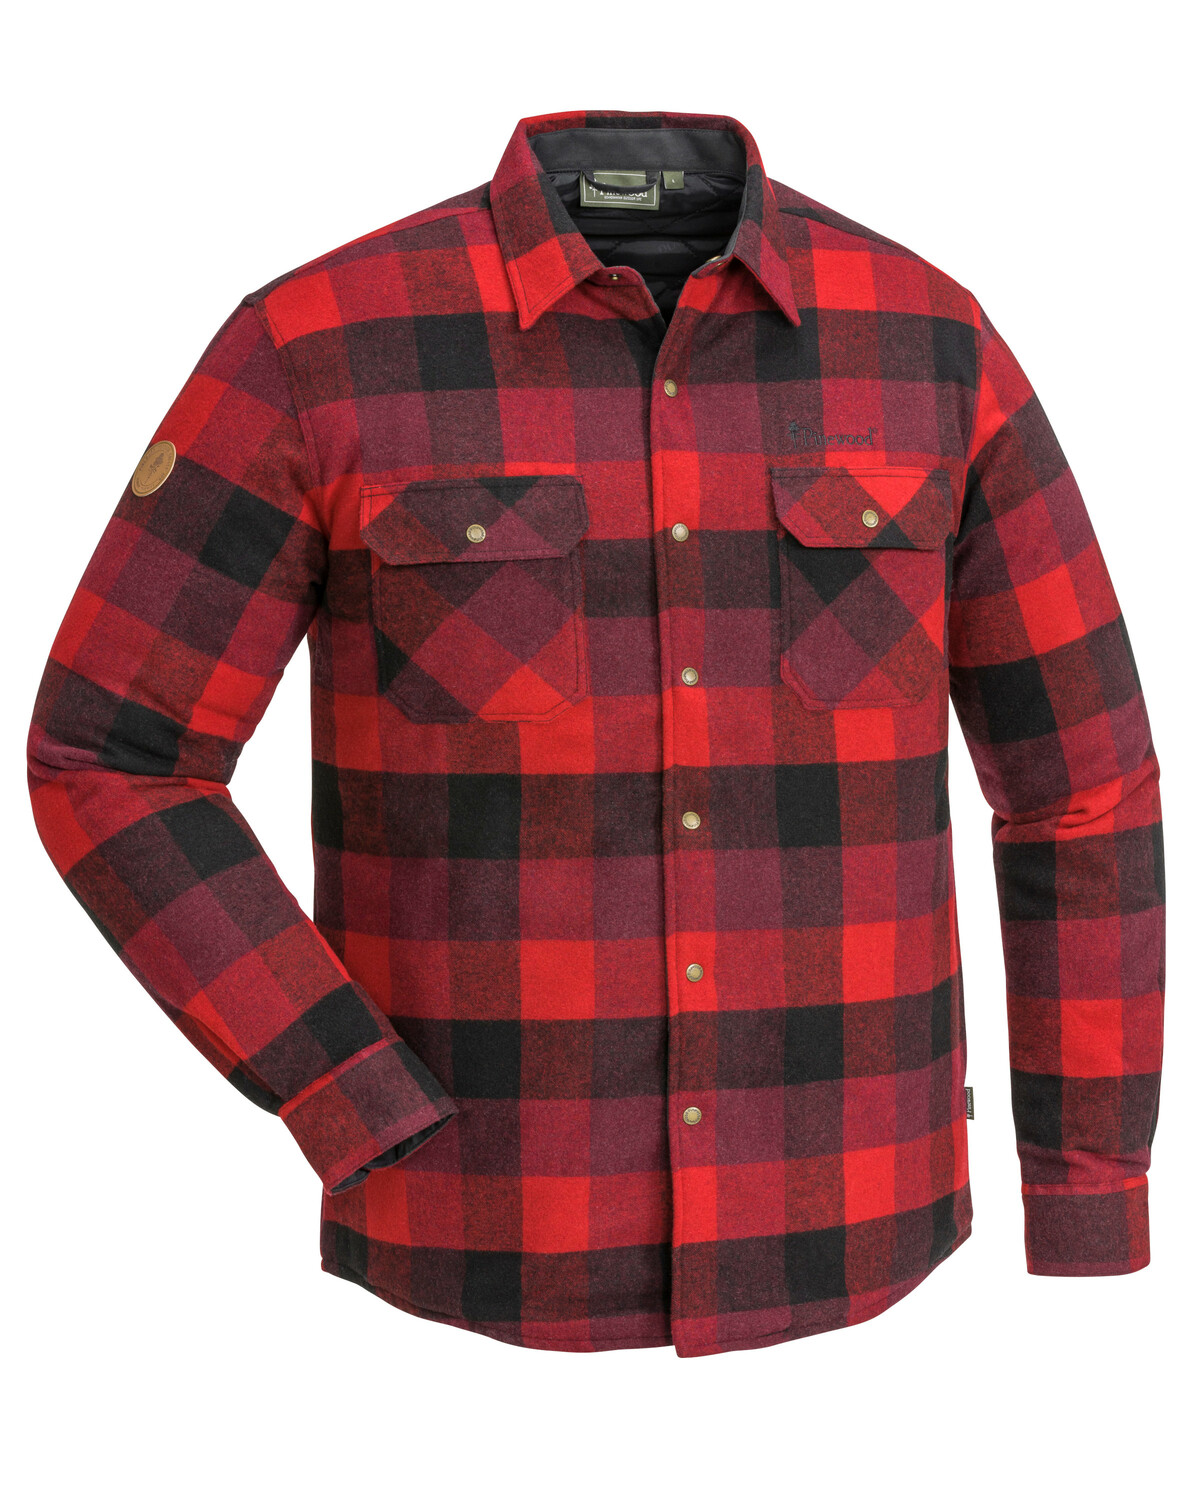  Утепленная рубашка CANADA CLASSIC 2.0 Pinewood 5000